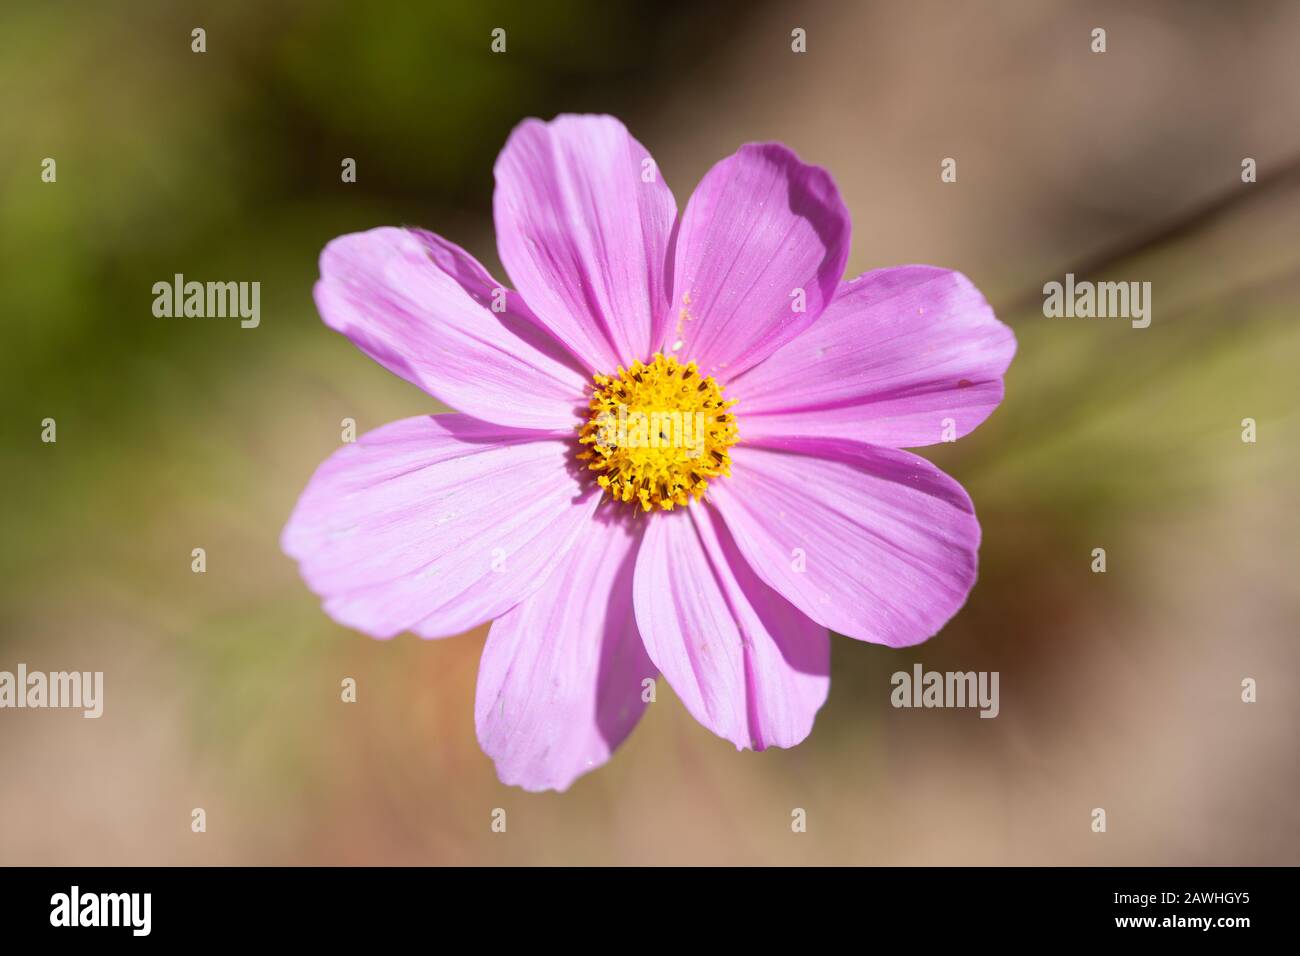 Vue de dessus d'une fleur de couleur rose du jardin ou du Cosmos mexicain - Cosmos bipinnatus - sur un fond flou. Banque D'Images